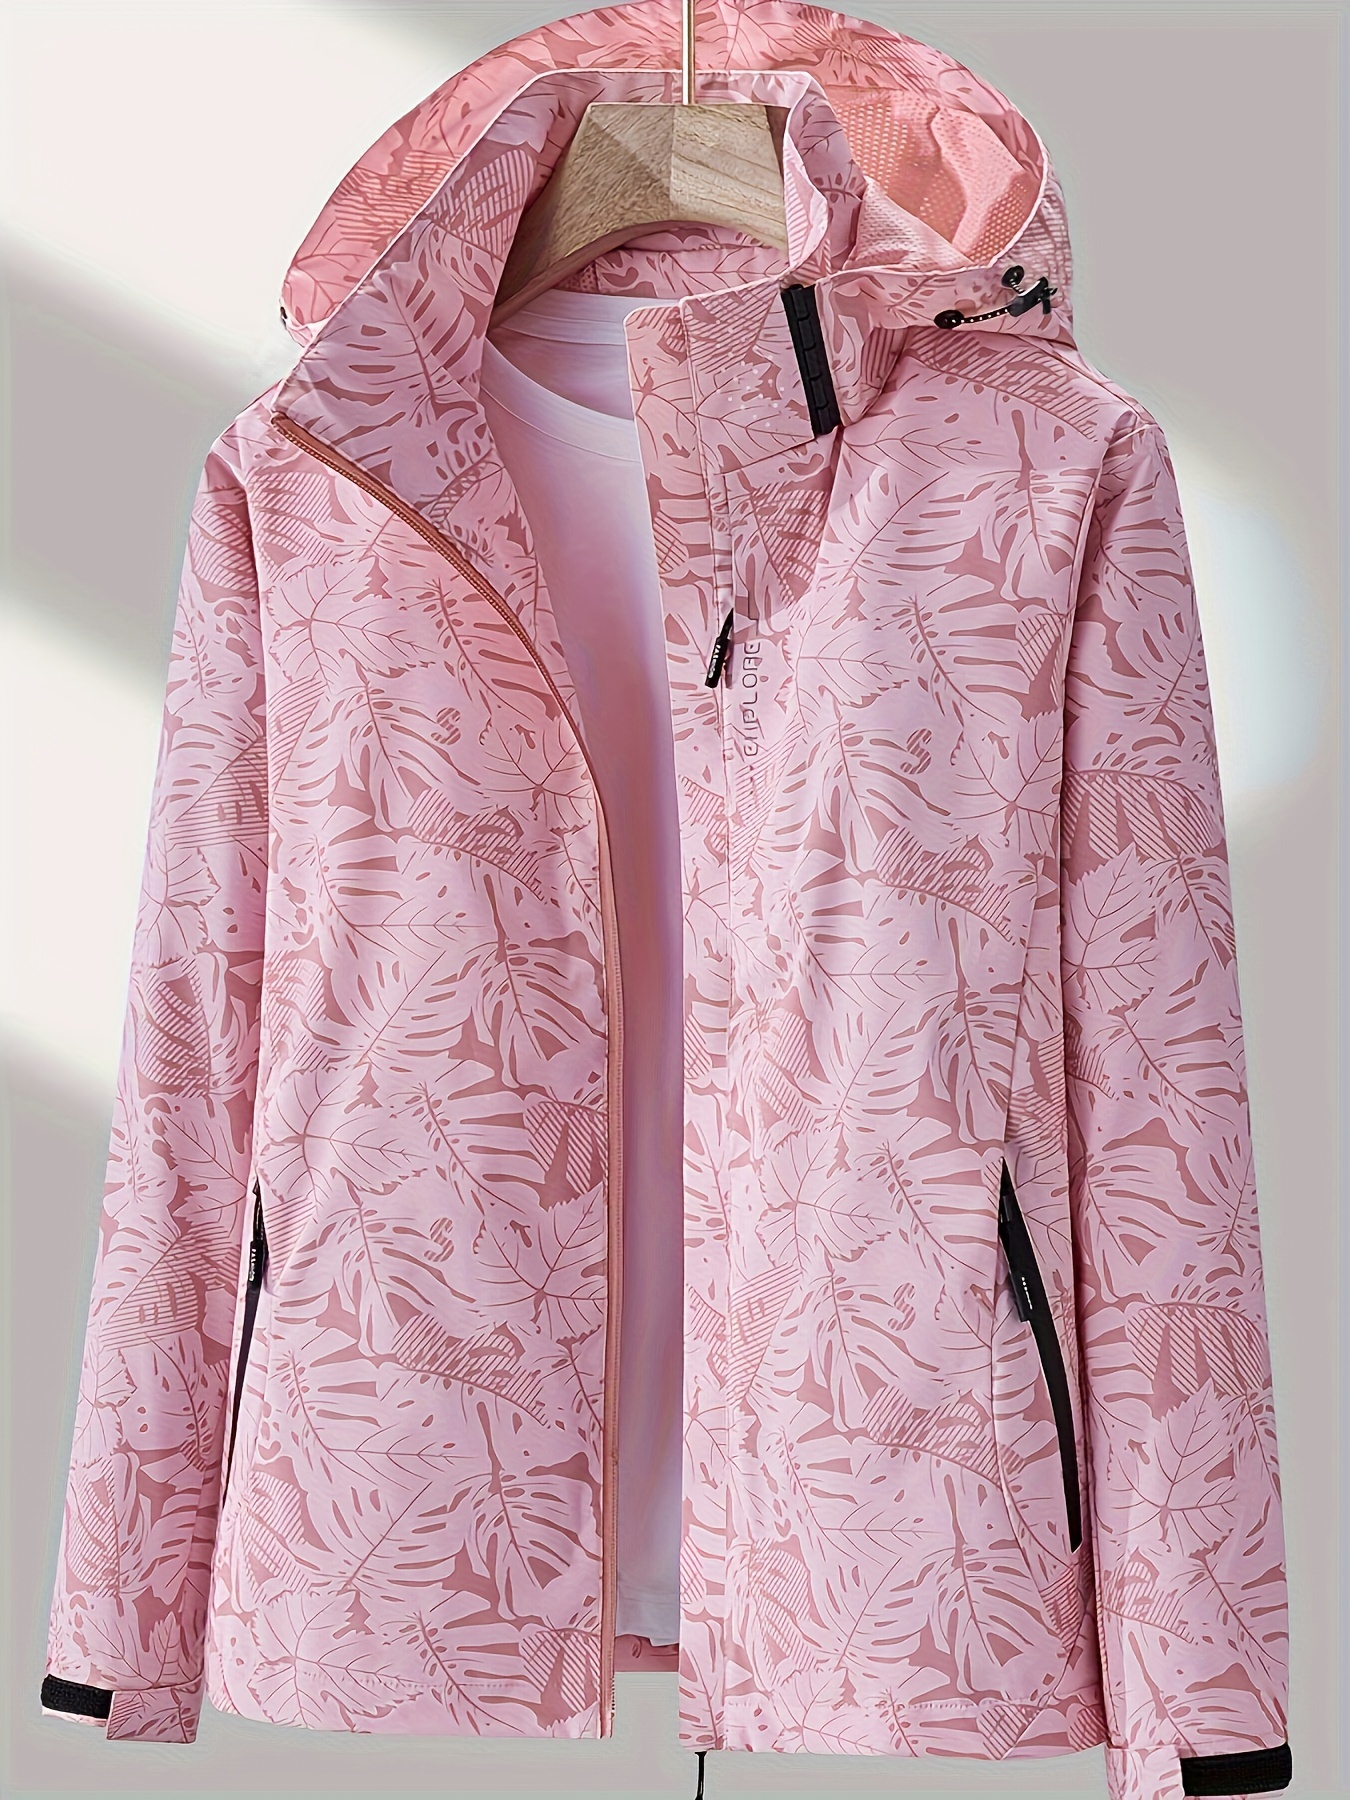 Chaqueta de camuflaje para exteriores con capucha extraíble, chaqueta cortaviento para mujer a prueba de lluvia, vestimenta para exteriores para mujer, chamarra, campera